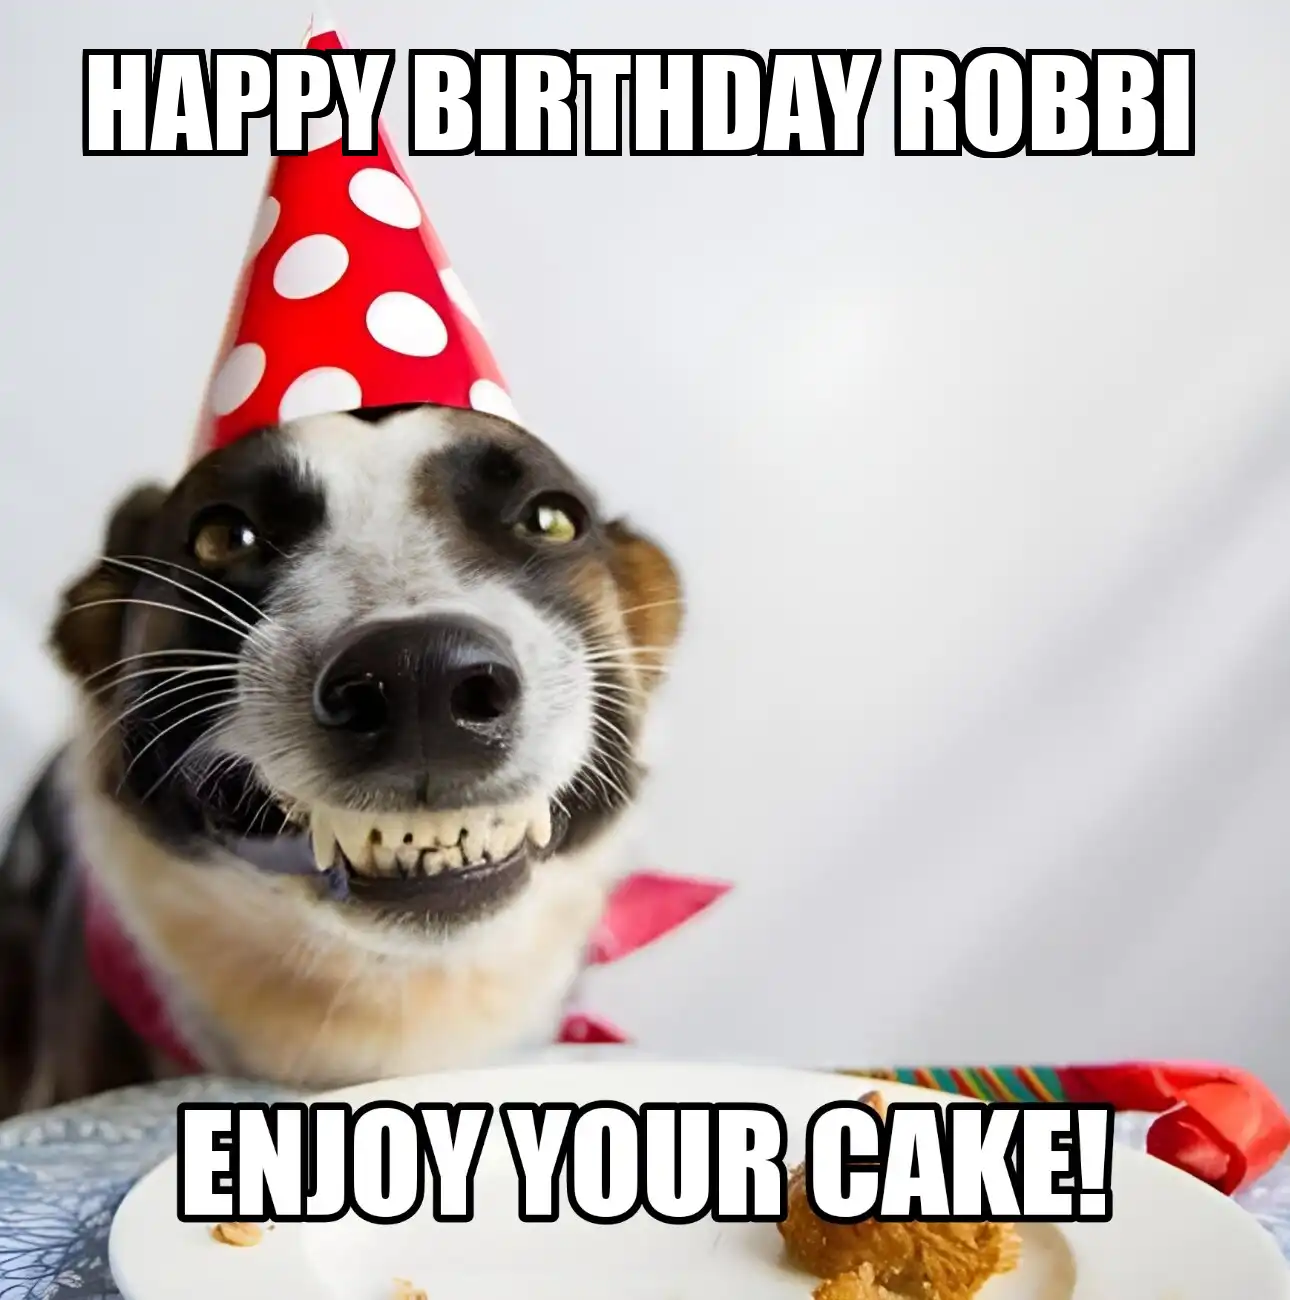 Happy Birthday Robbi Enjoy Your Cake Dog Meme